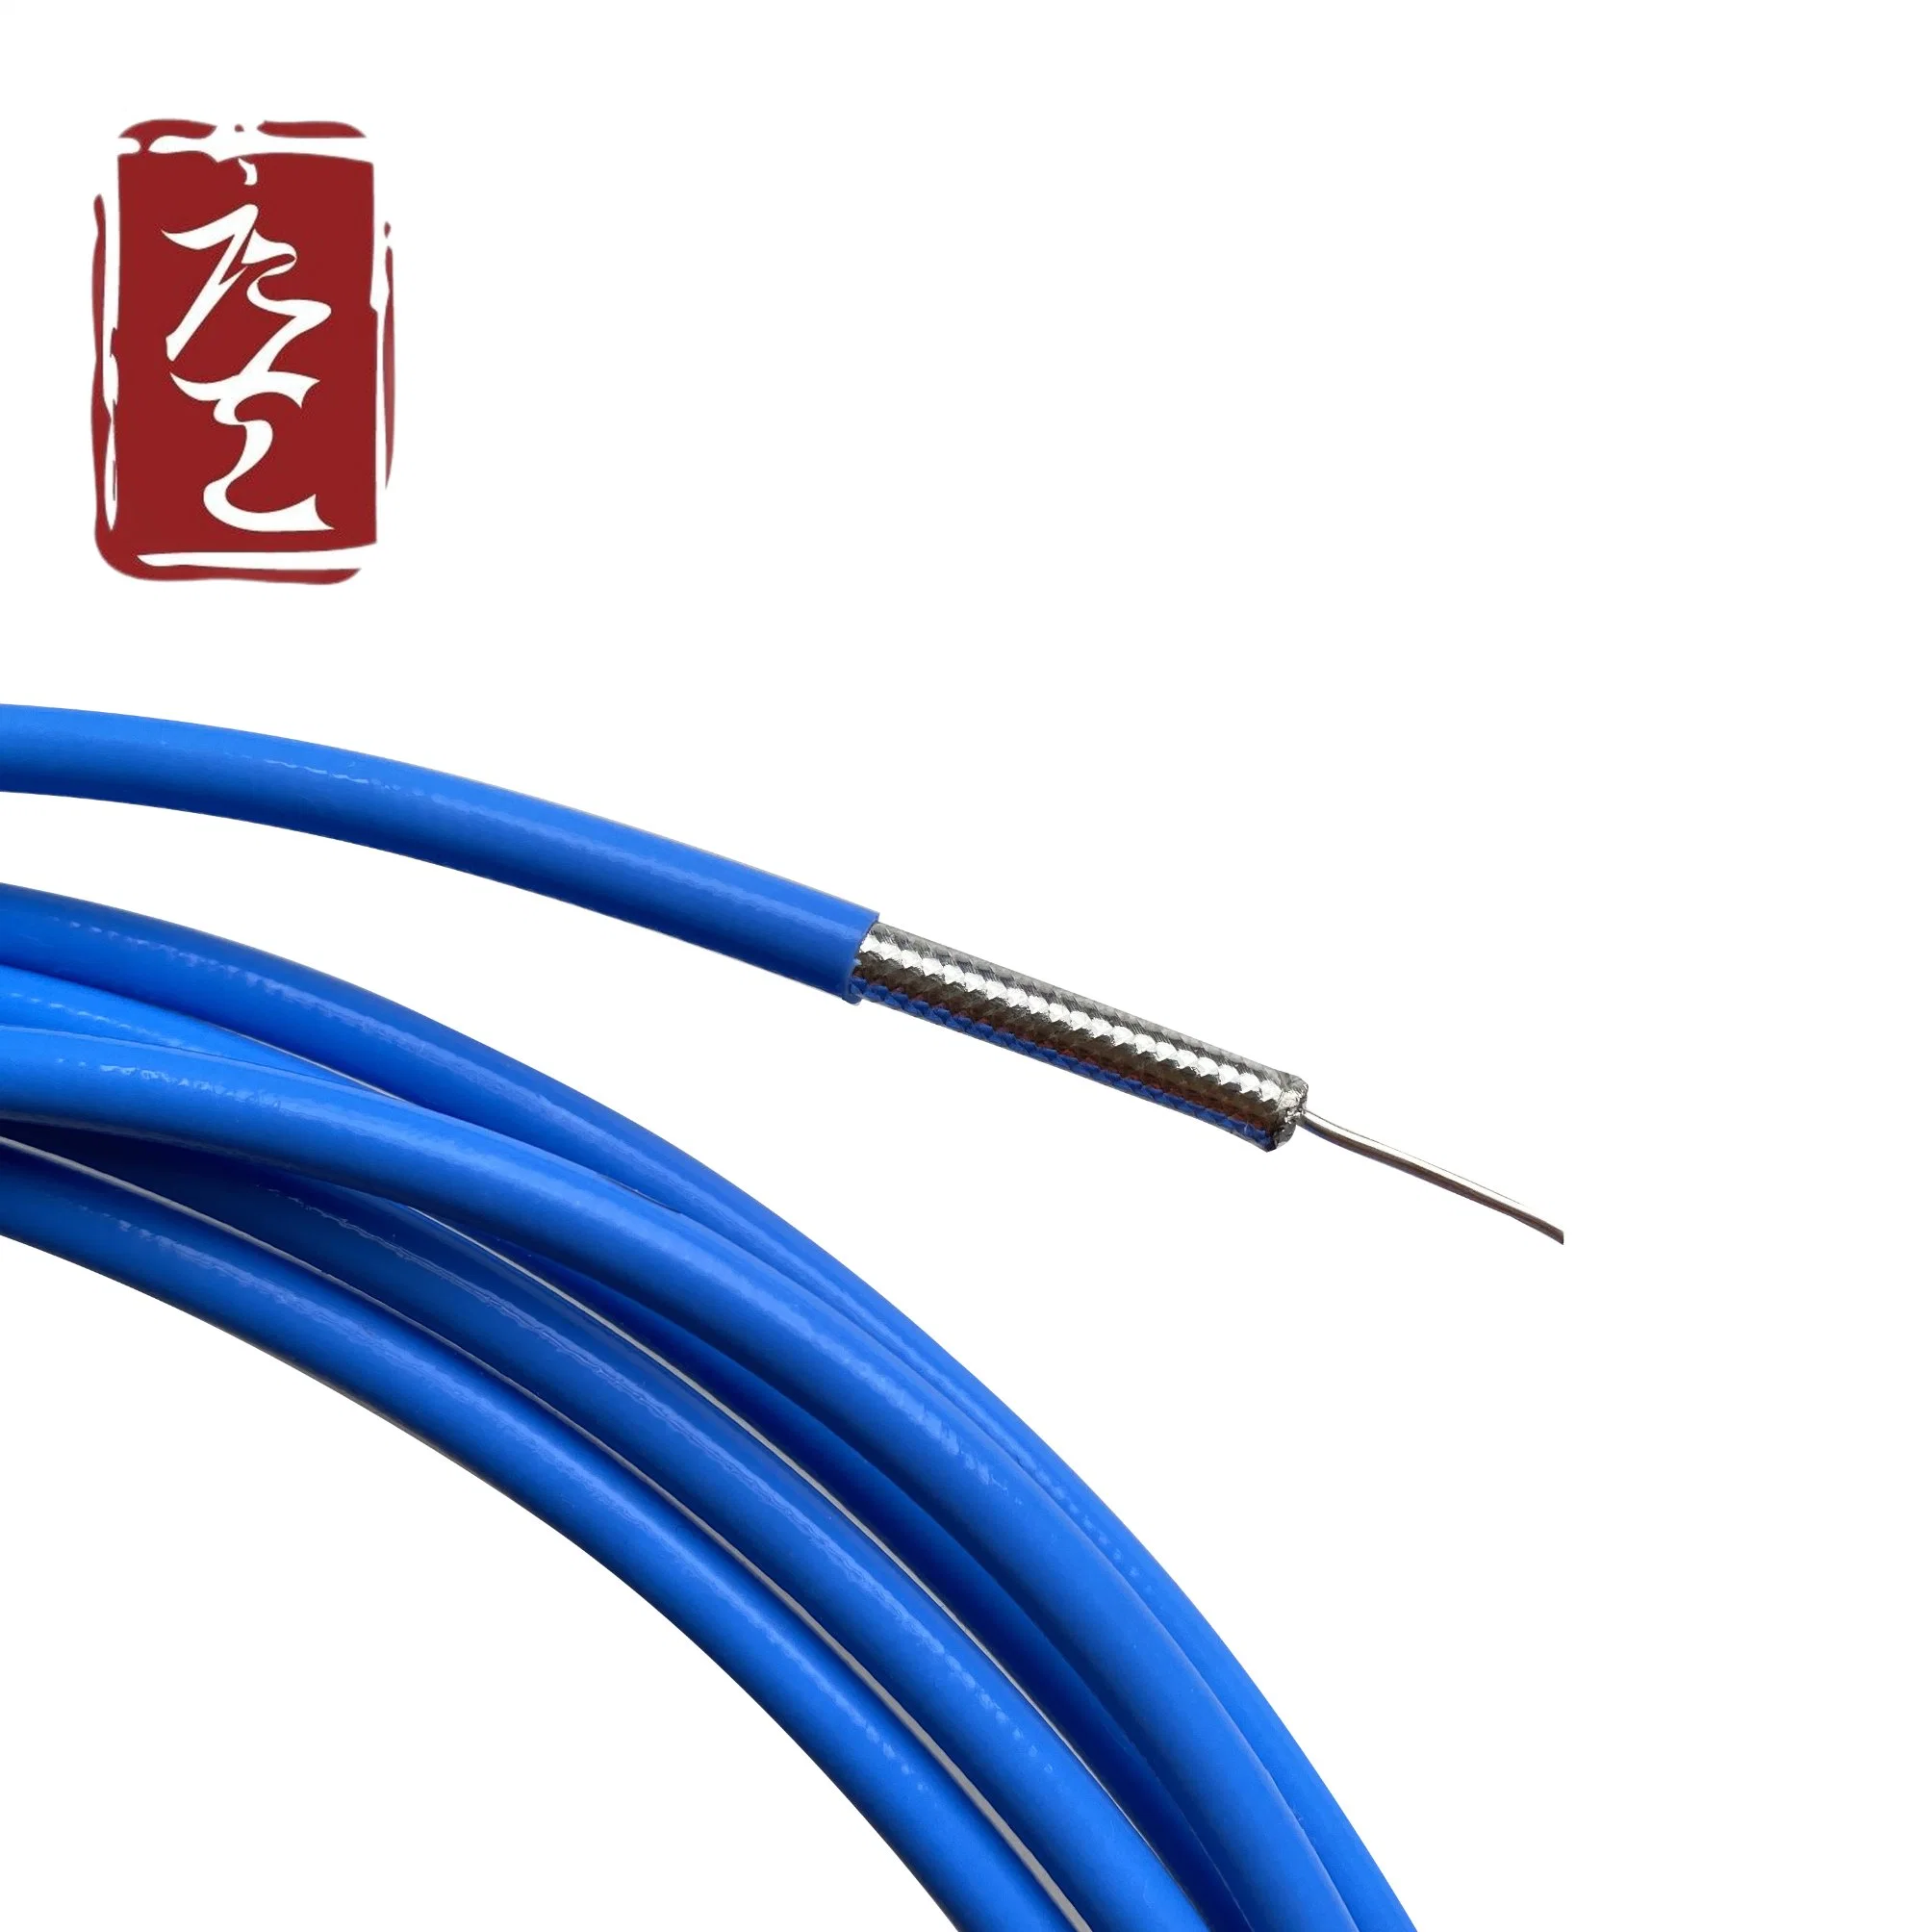 Коаксиальный кабель RF Rg141 из медной меди с покрытием из PTFE от производителя комплектного оборудования CE RoHS